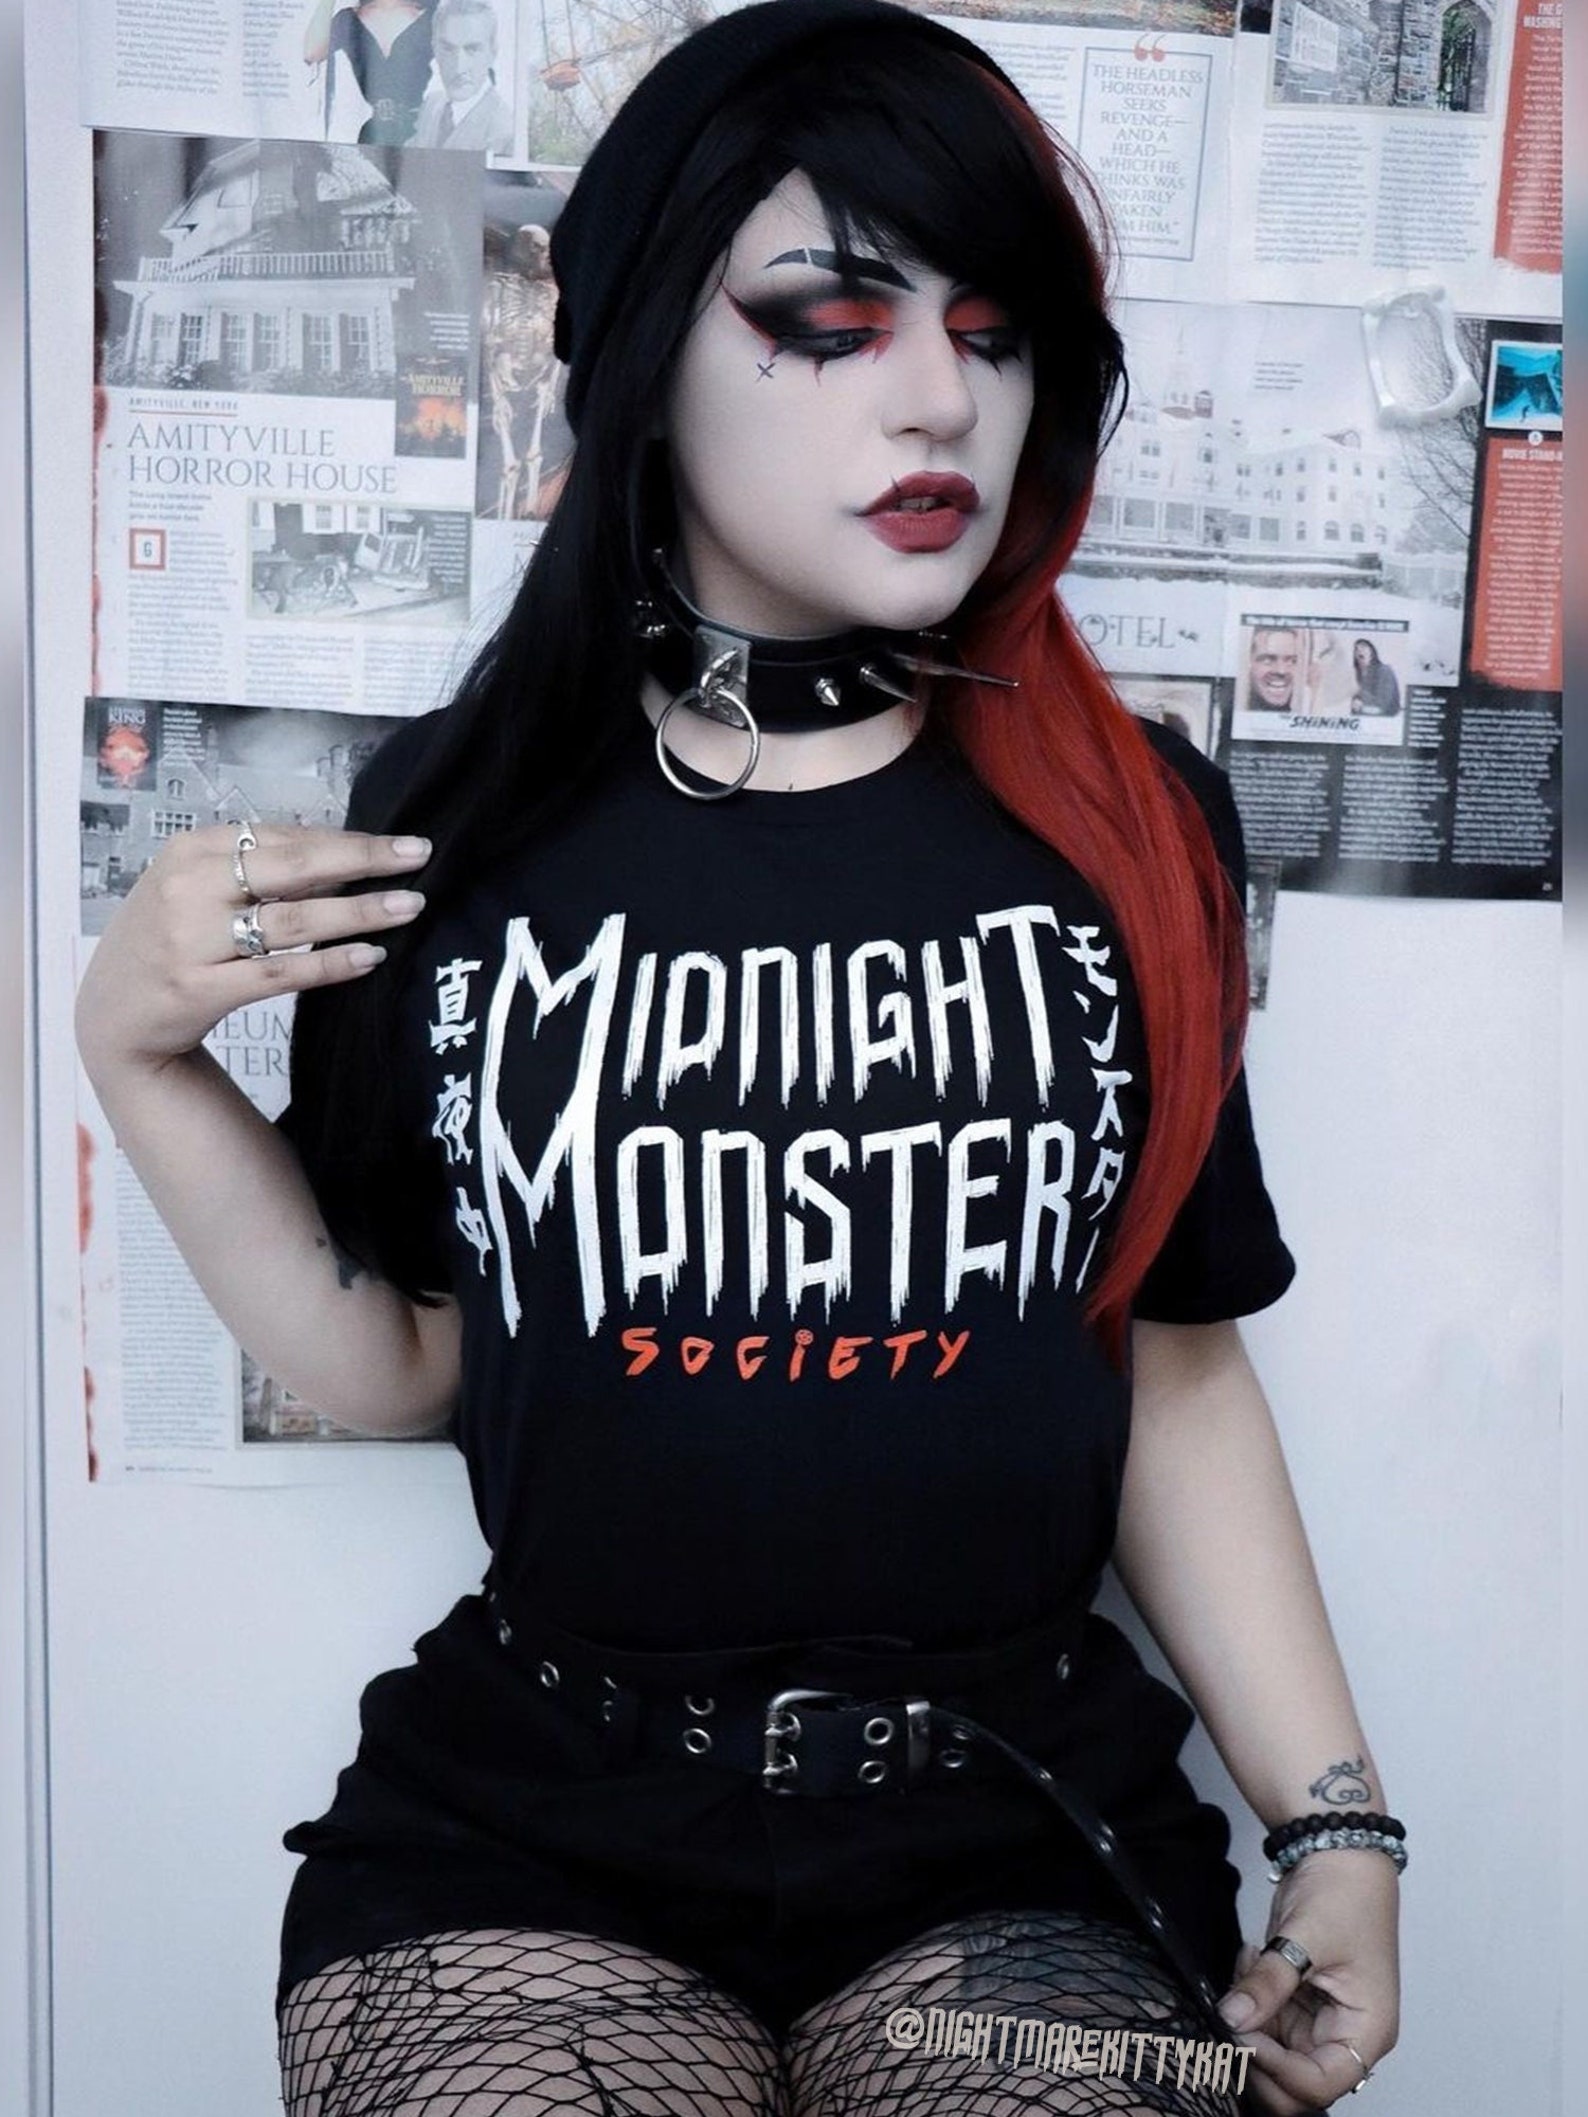 Midnight Monster Society T-shirt - Etsy